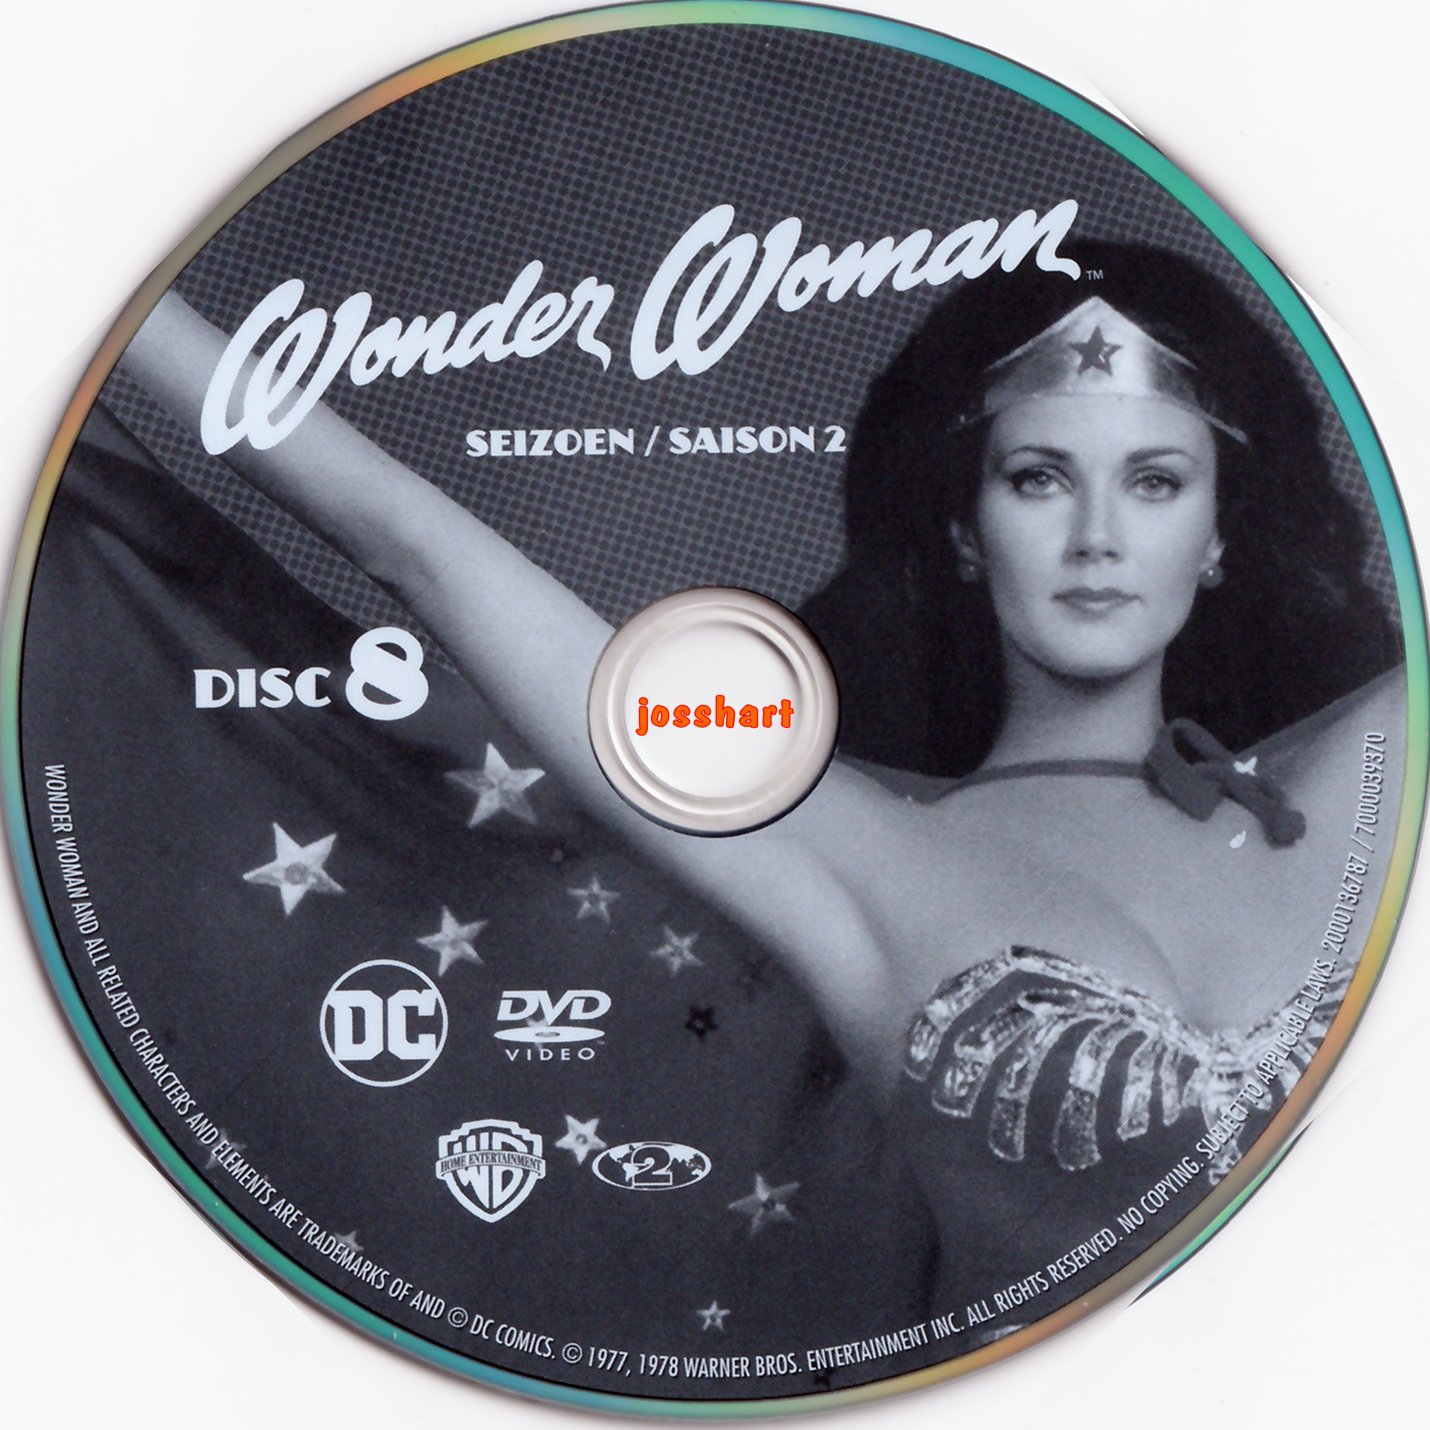 Wonder Woman Saison 2 DISC 8